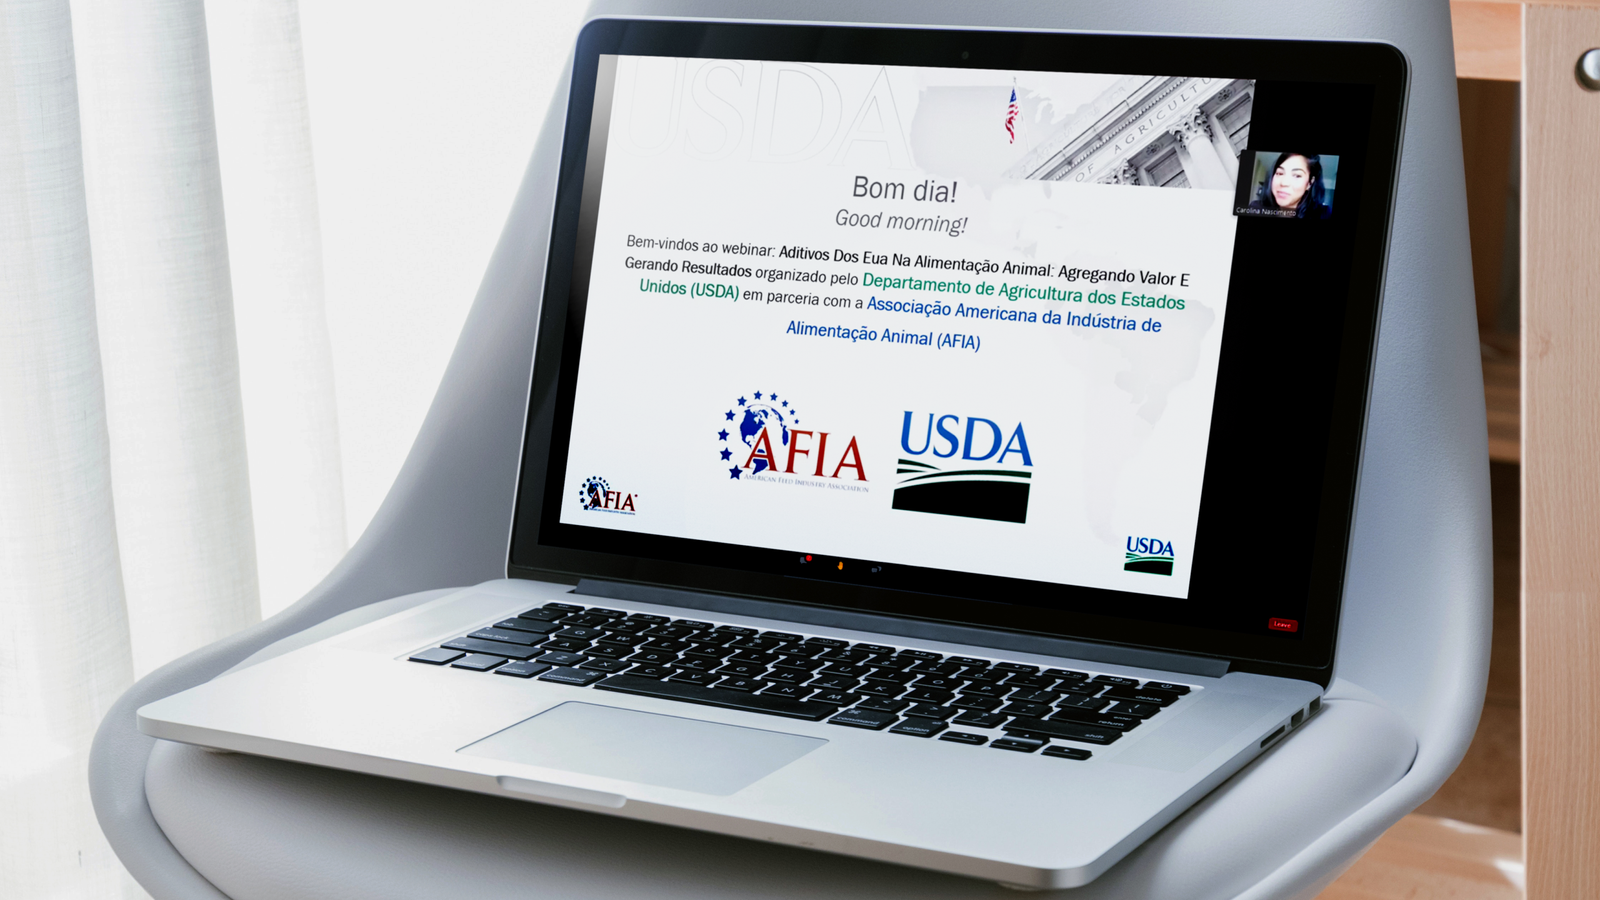 ABRA assiste webinar da USDA e AFIA sobre aditivos na alimentação animal